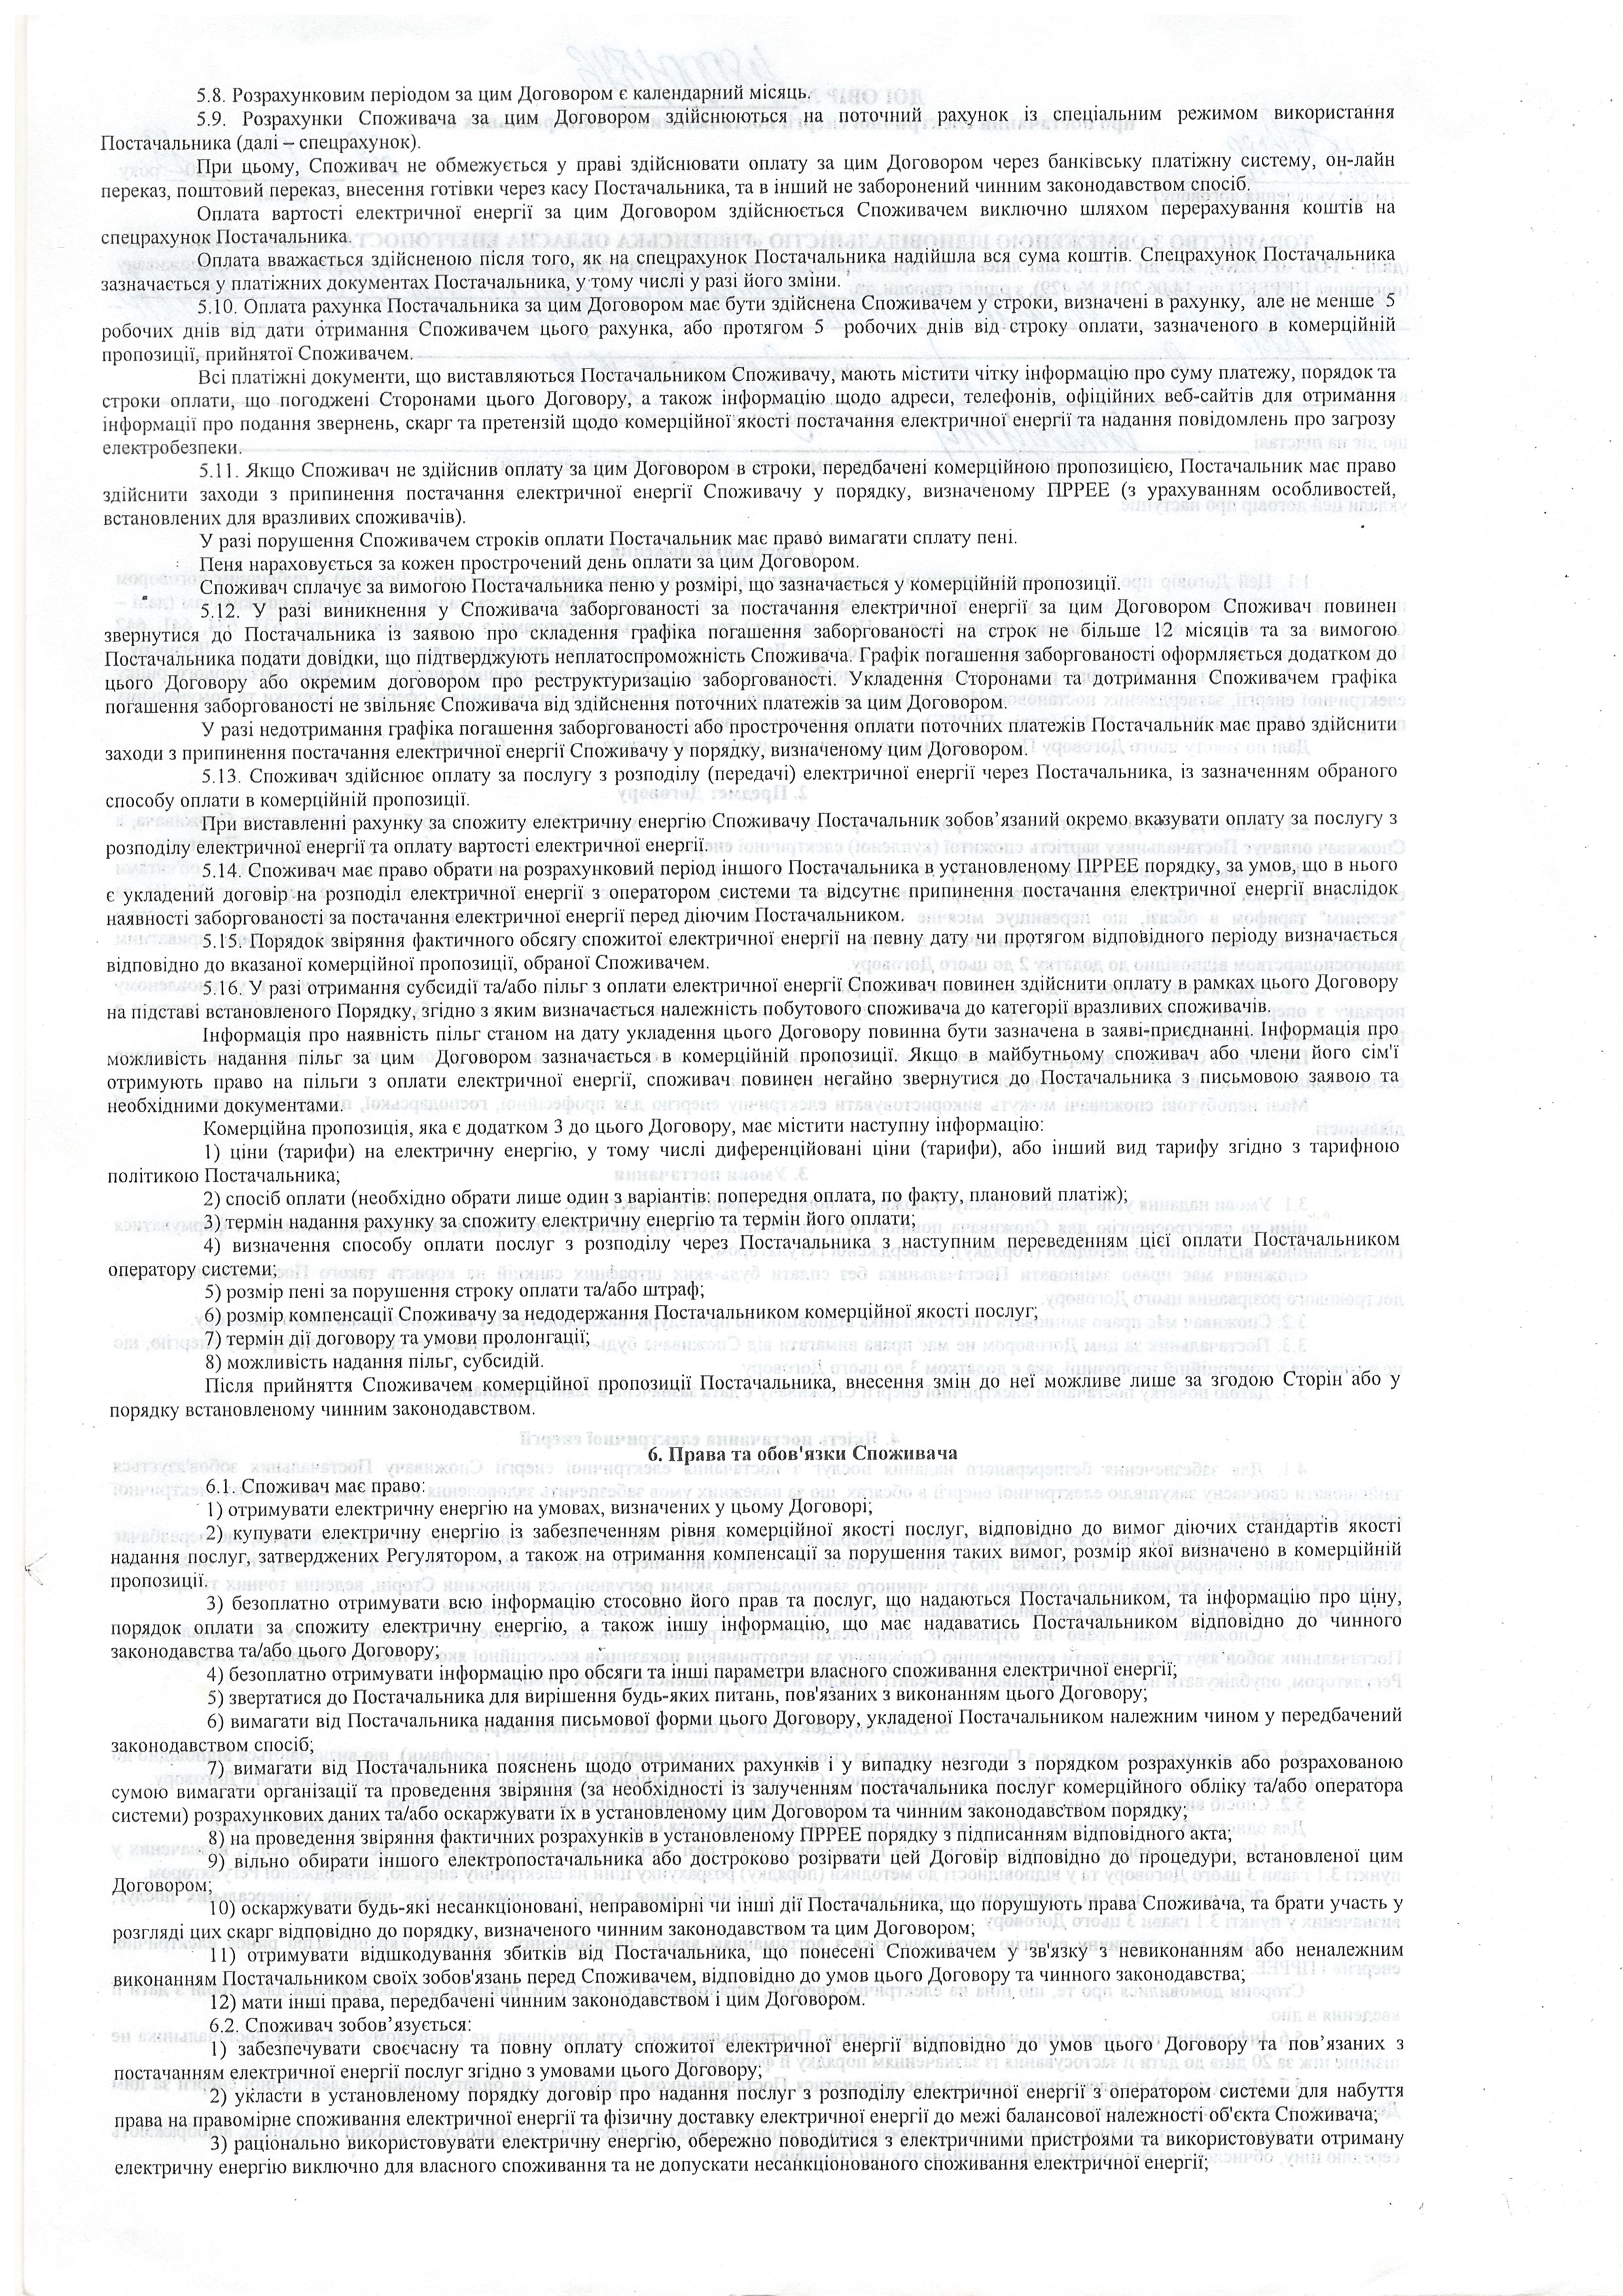 Договір №480001576 про постачання електричної енергії  постачальником універсальних послуг ст.2